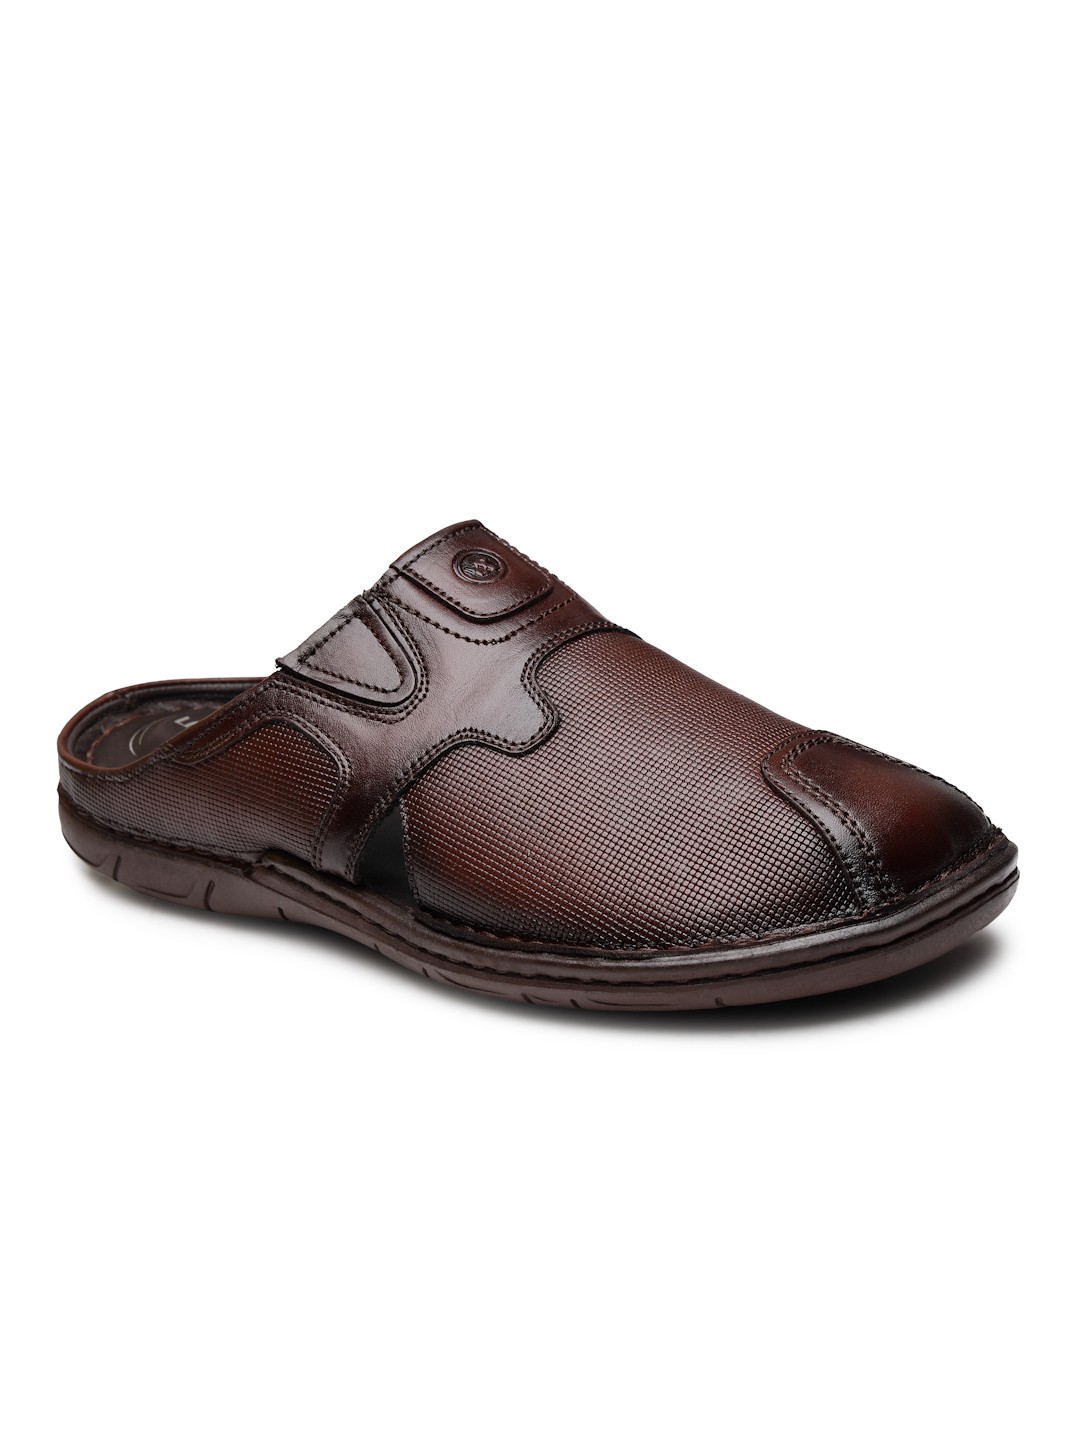 Buy Von Wellx Germany Comfort Men's Brown Slippers Arlo Online in Doha